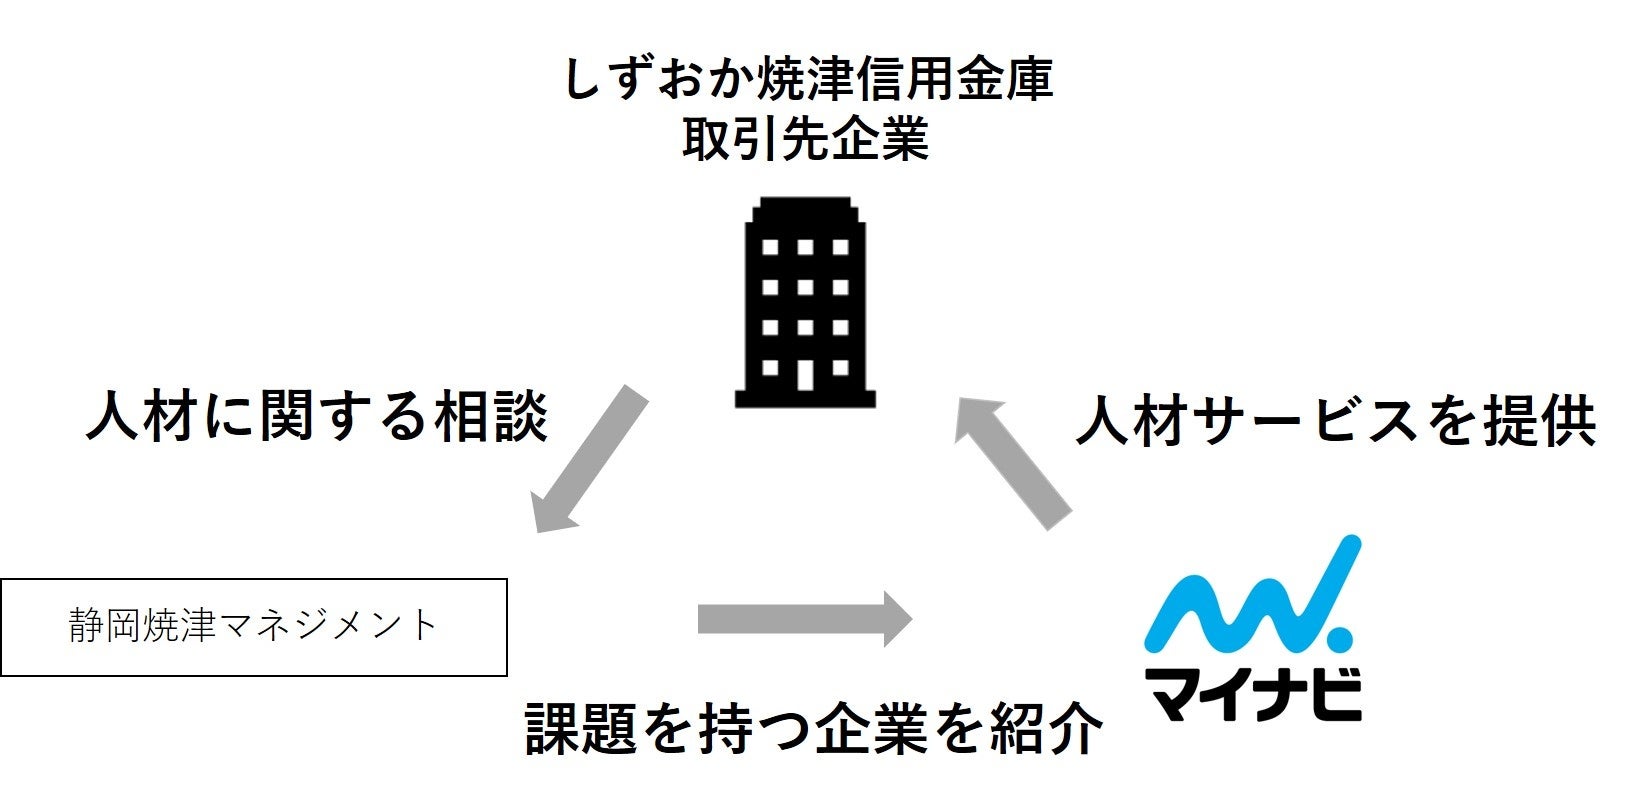 三菱ＨＣキャピタル、東京ガスがトランジション・ローンを活用したリース契約を締結～「Enablerによるトランジション・ファイナンス調達」として国内で初めて補助金に採択～